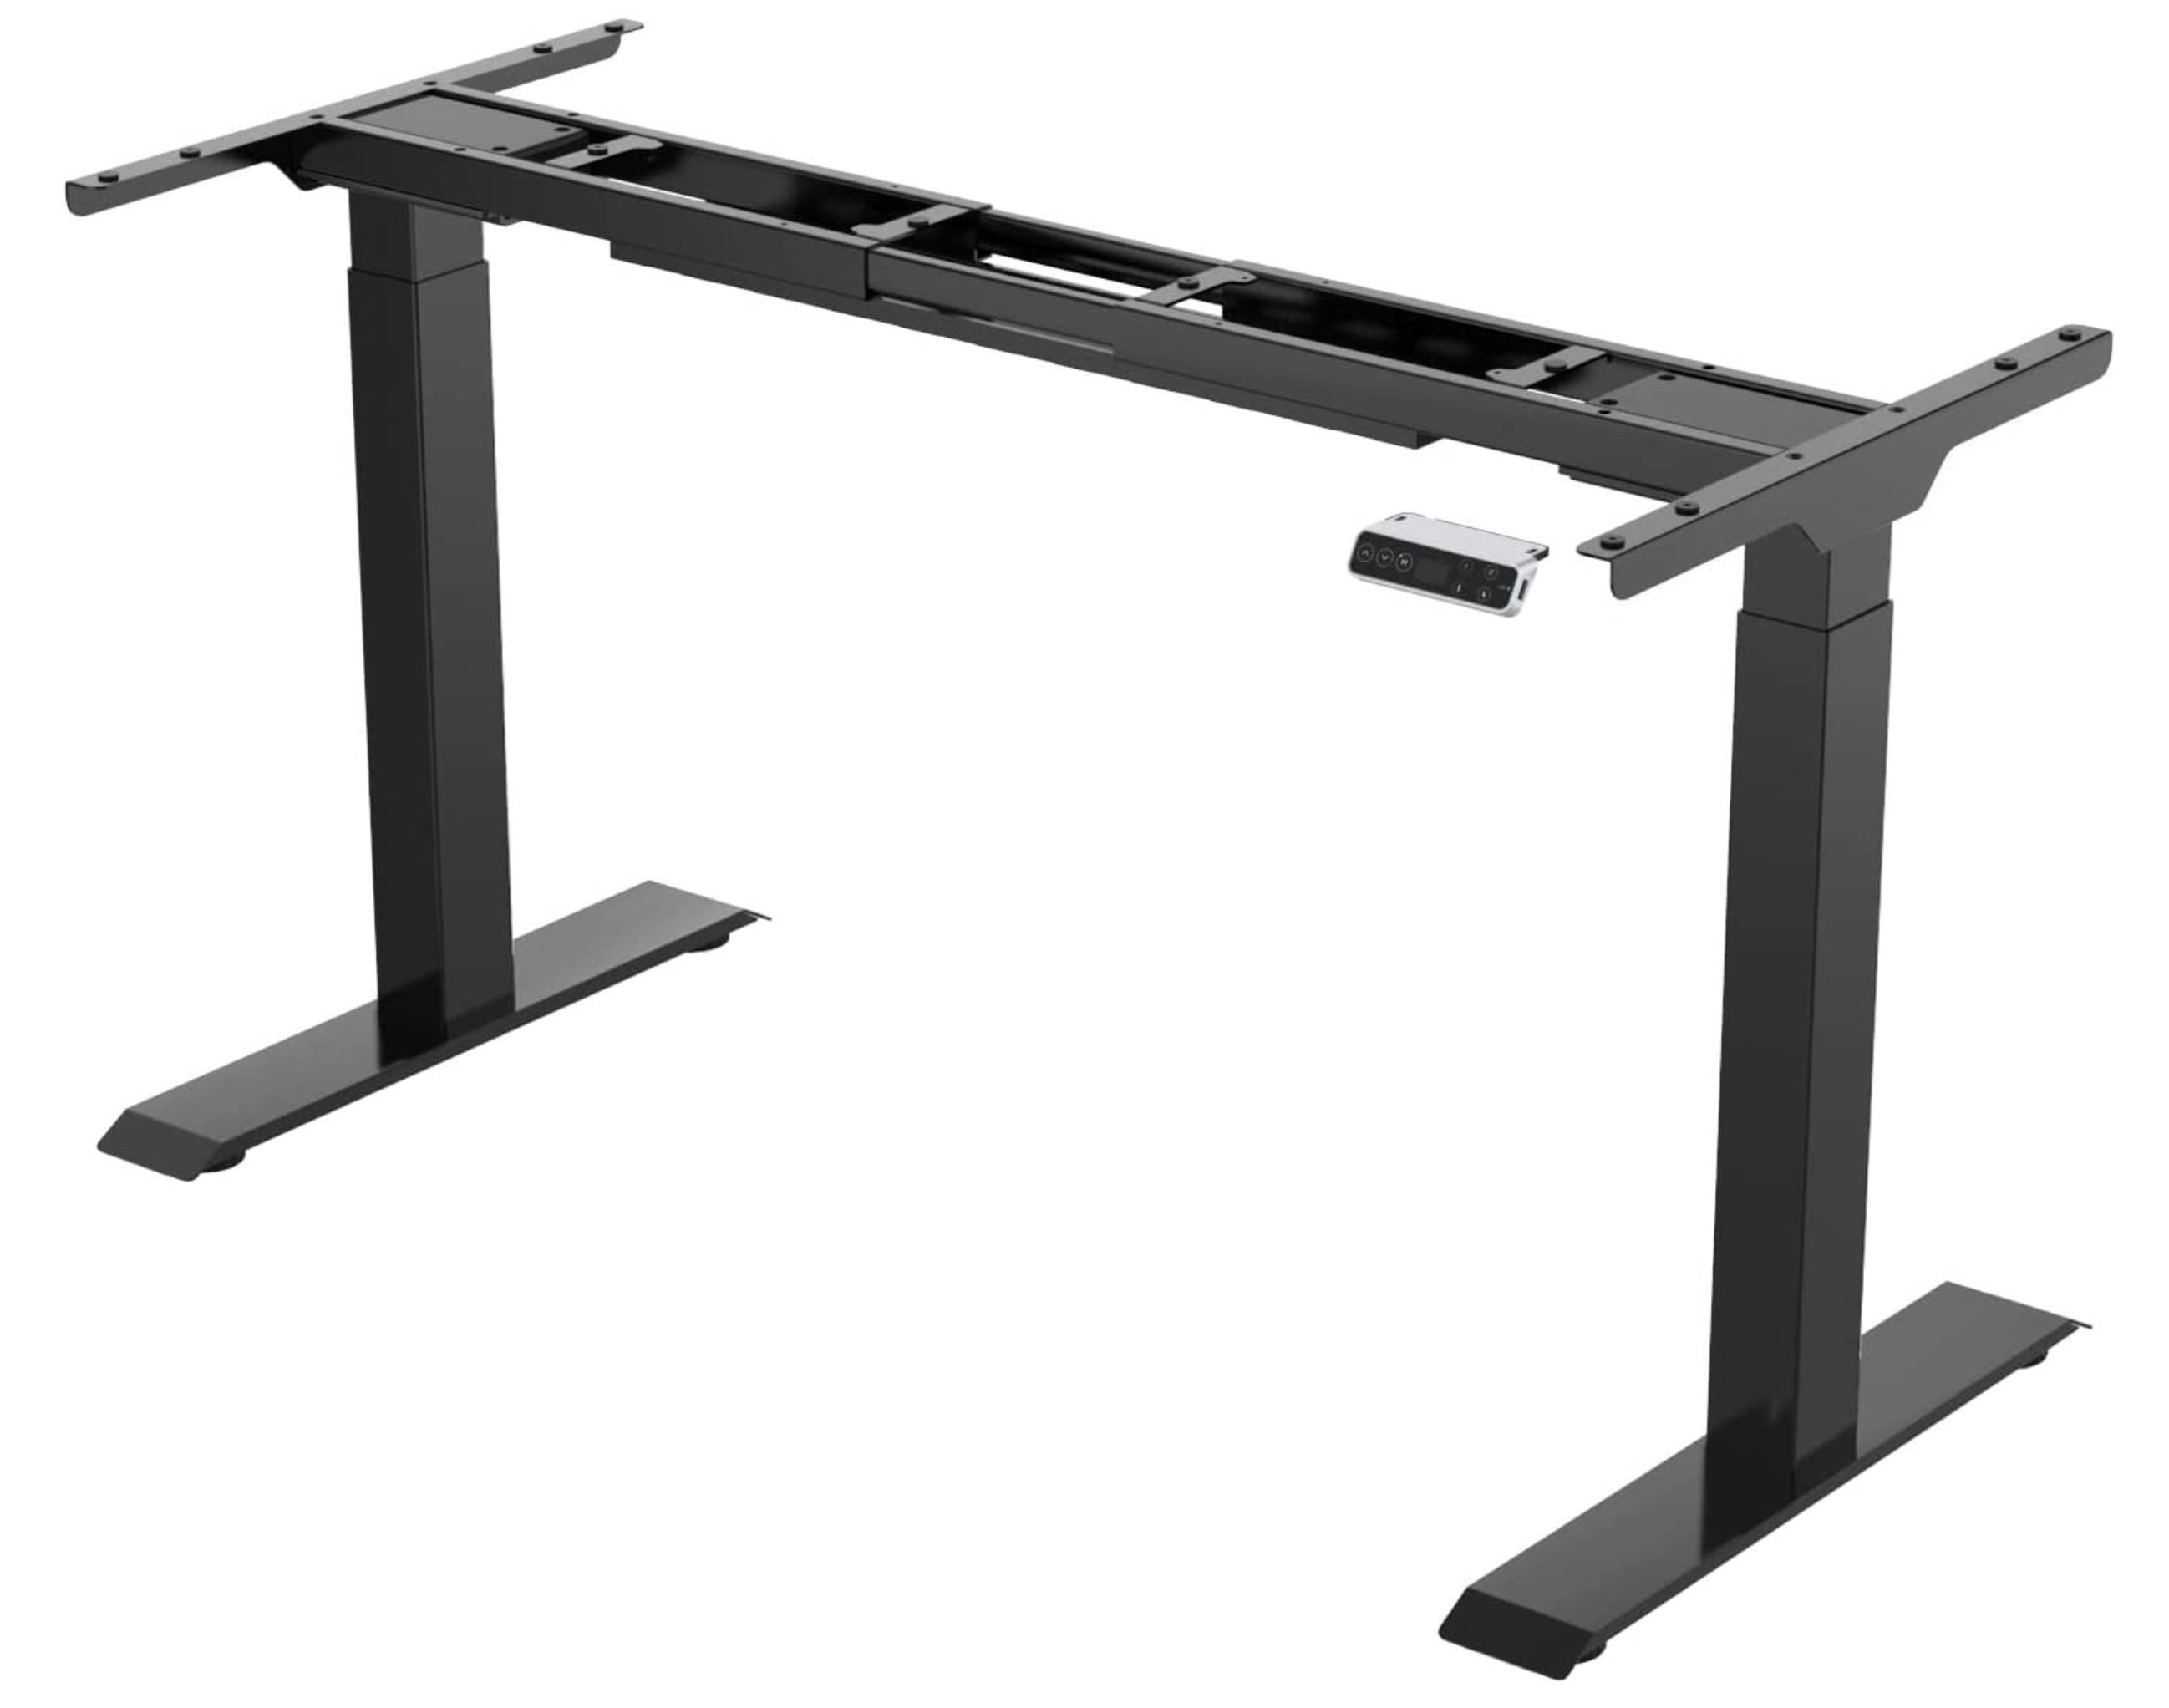 Sanodesk Basic Line stufenlos höhenverstellbarer Schreibtisch mit Kollisionschutz für 148,99€ (statt 210€)